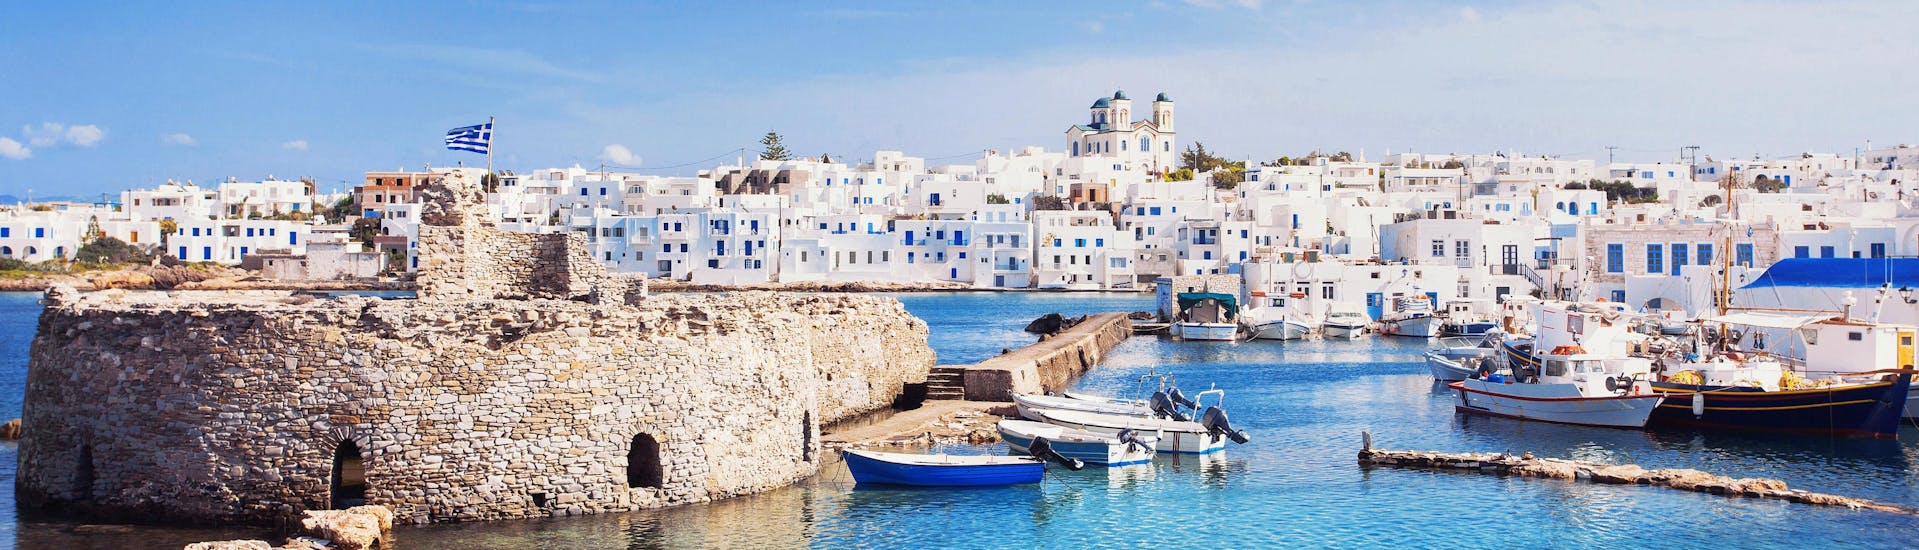 Prachtig uitzicht op de karakteristieke witte huizen langs de kusten van de Cycladen, Griekenland, een populaire bestemming voor boottochten.